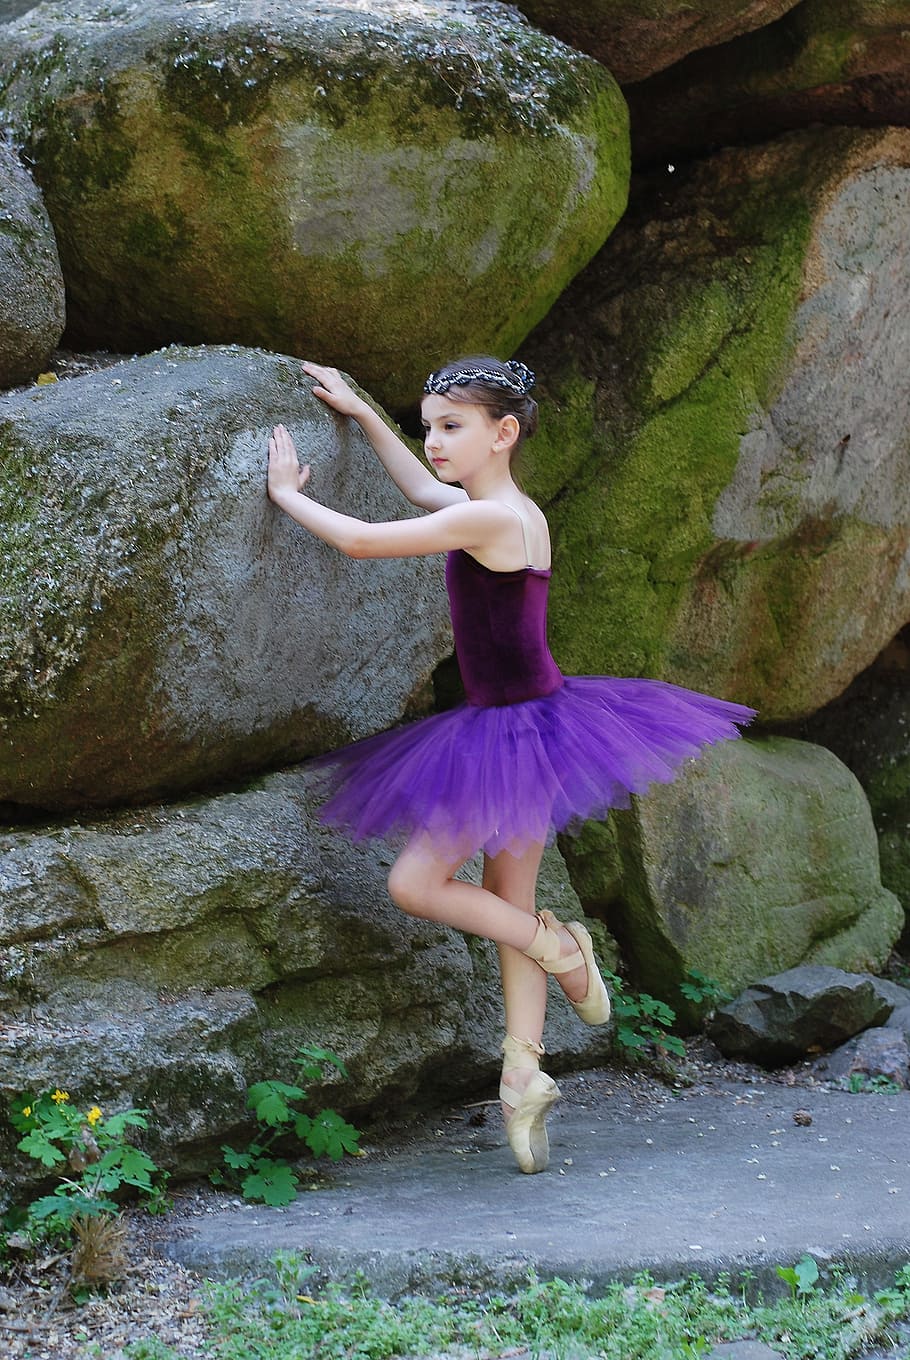 Hình nền với cô gái đang mặc váy ballet tulle màu tím khiến bạn liên tưởng đến những buổi diễn ballet tuyệt vời. Nhấn vào ảnh để đón xem các bước nhảy của ballerina và chiêm ngưỡng màu tím tuyệt đẹp trên hình nền của bạn.